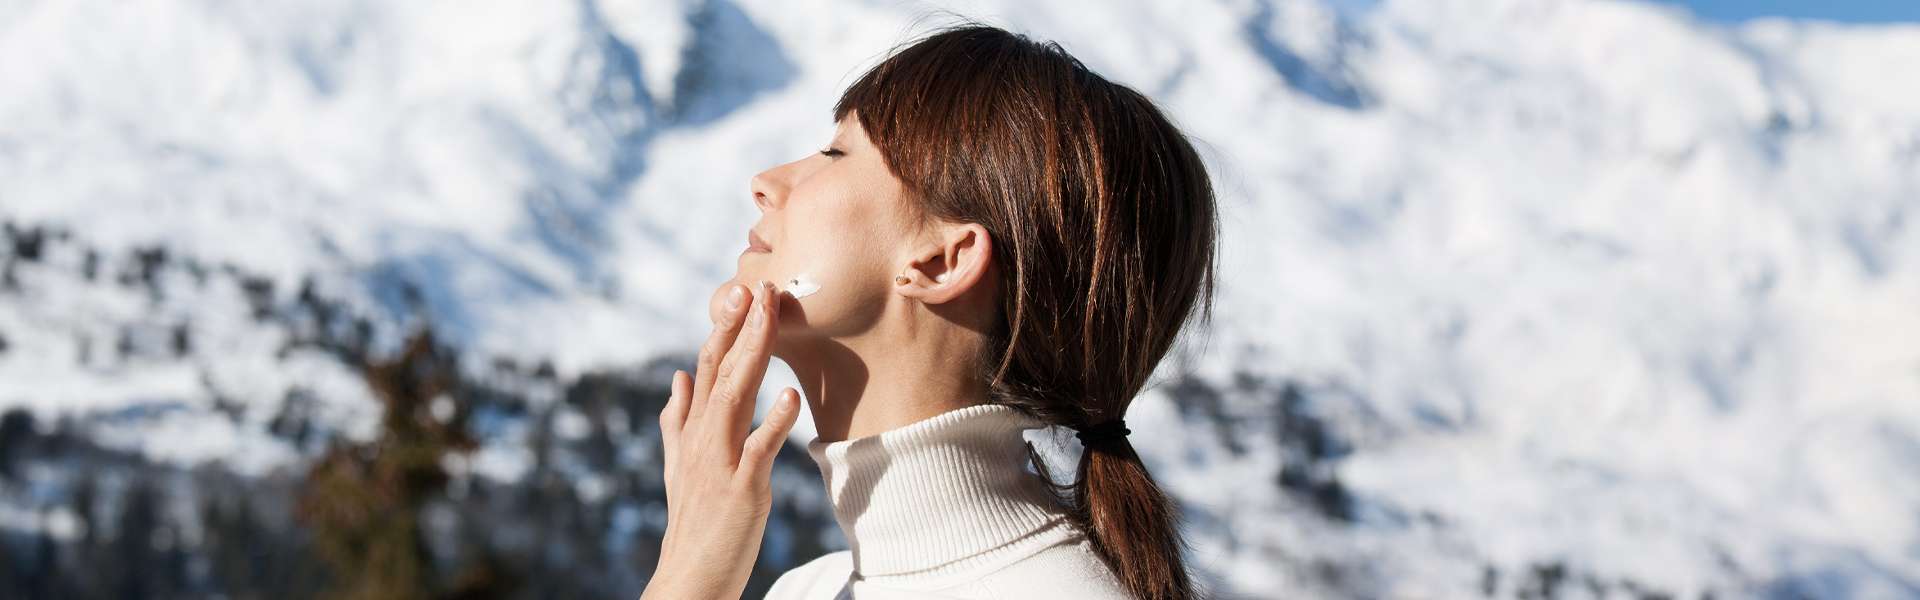 Protéger sa peau des rigueurs de l'hiver: cosmétiques et nutrition